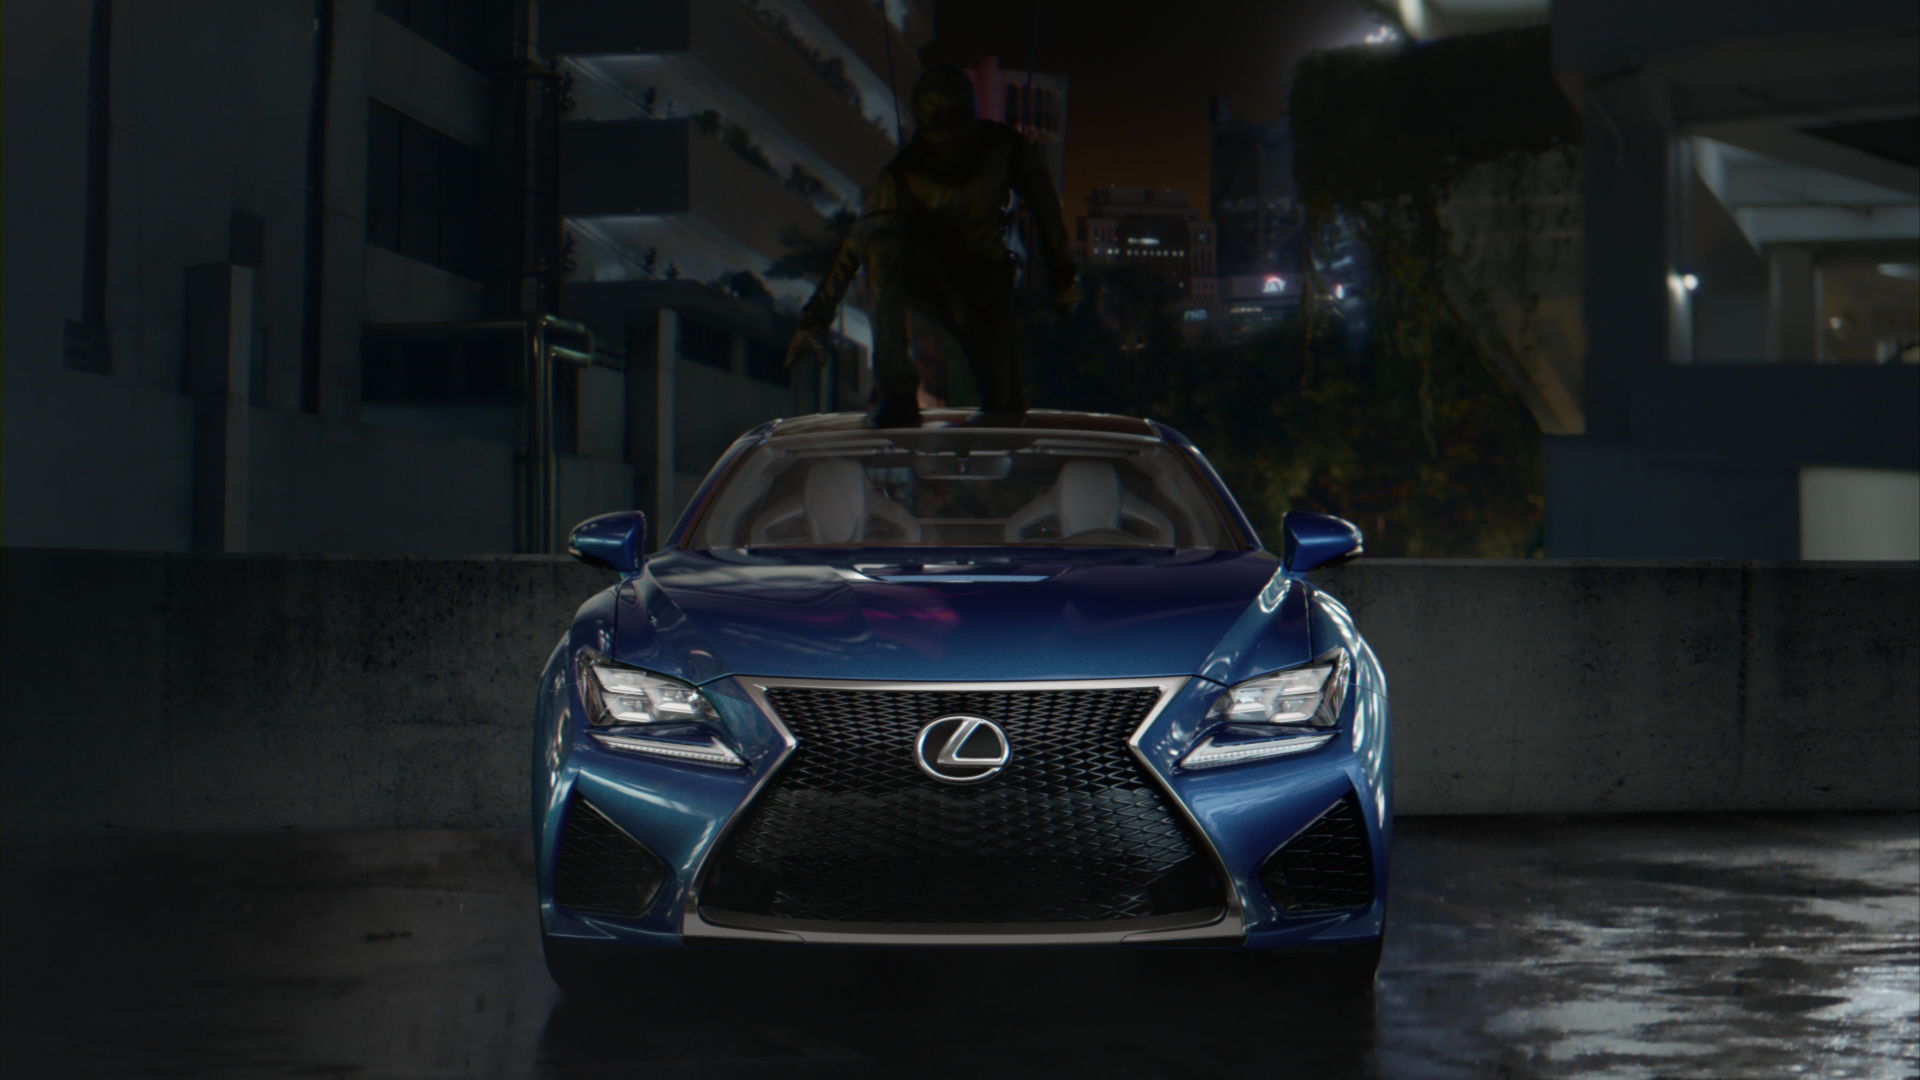 Lexus STROBE (Still, Scene 5)